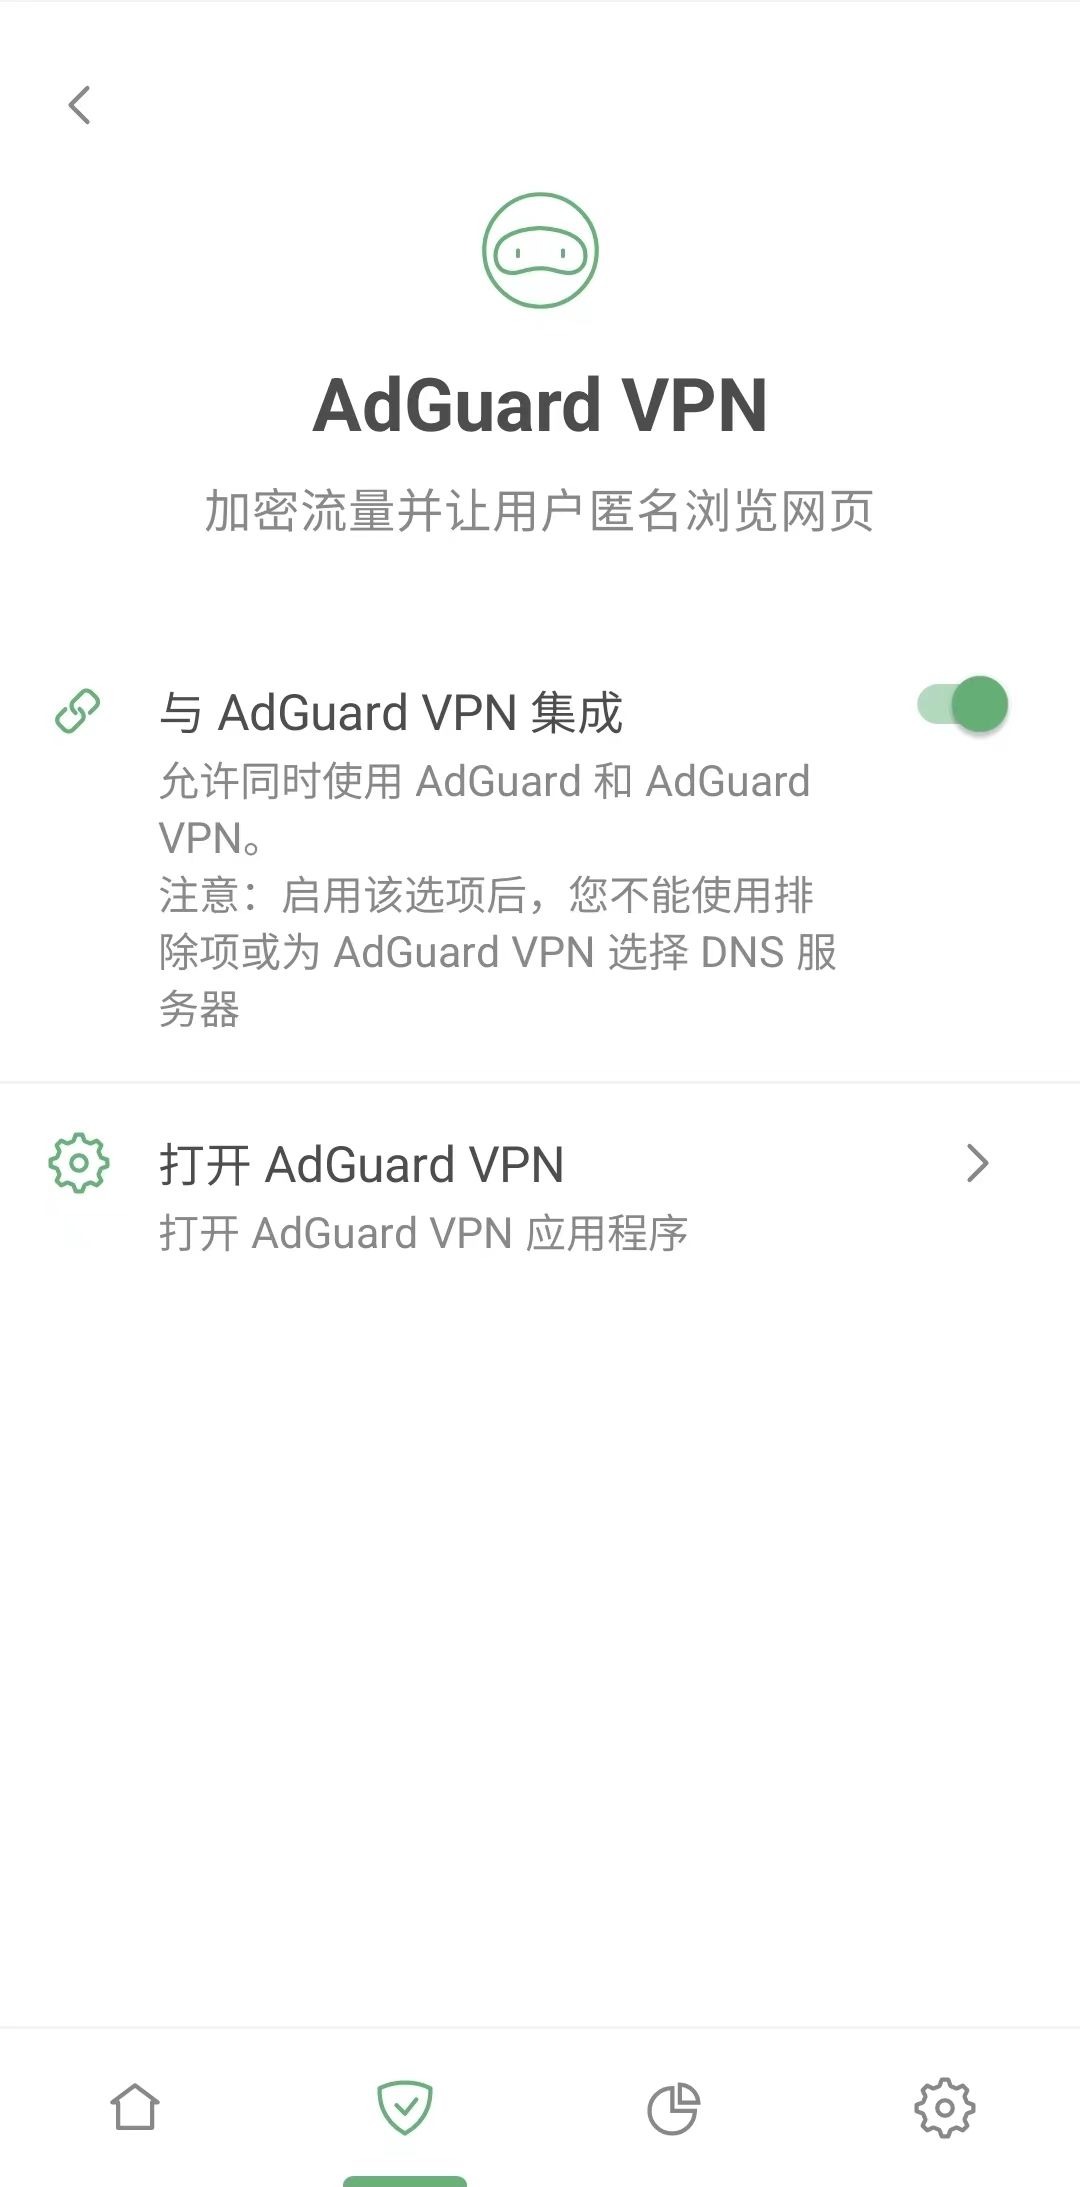 与 AdGuard VPN 集成 *mobile_border